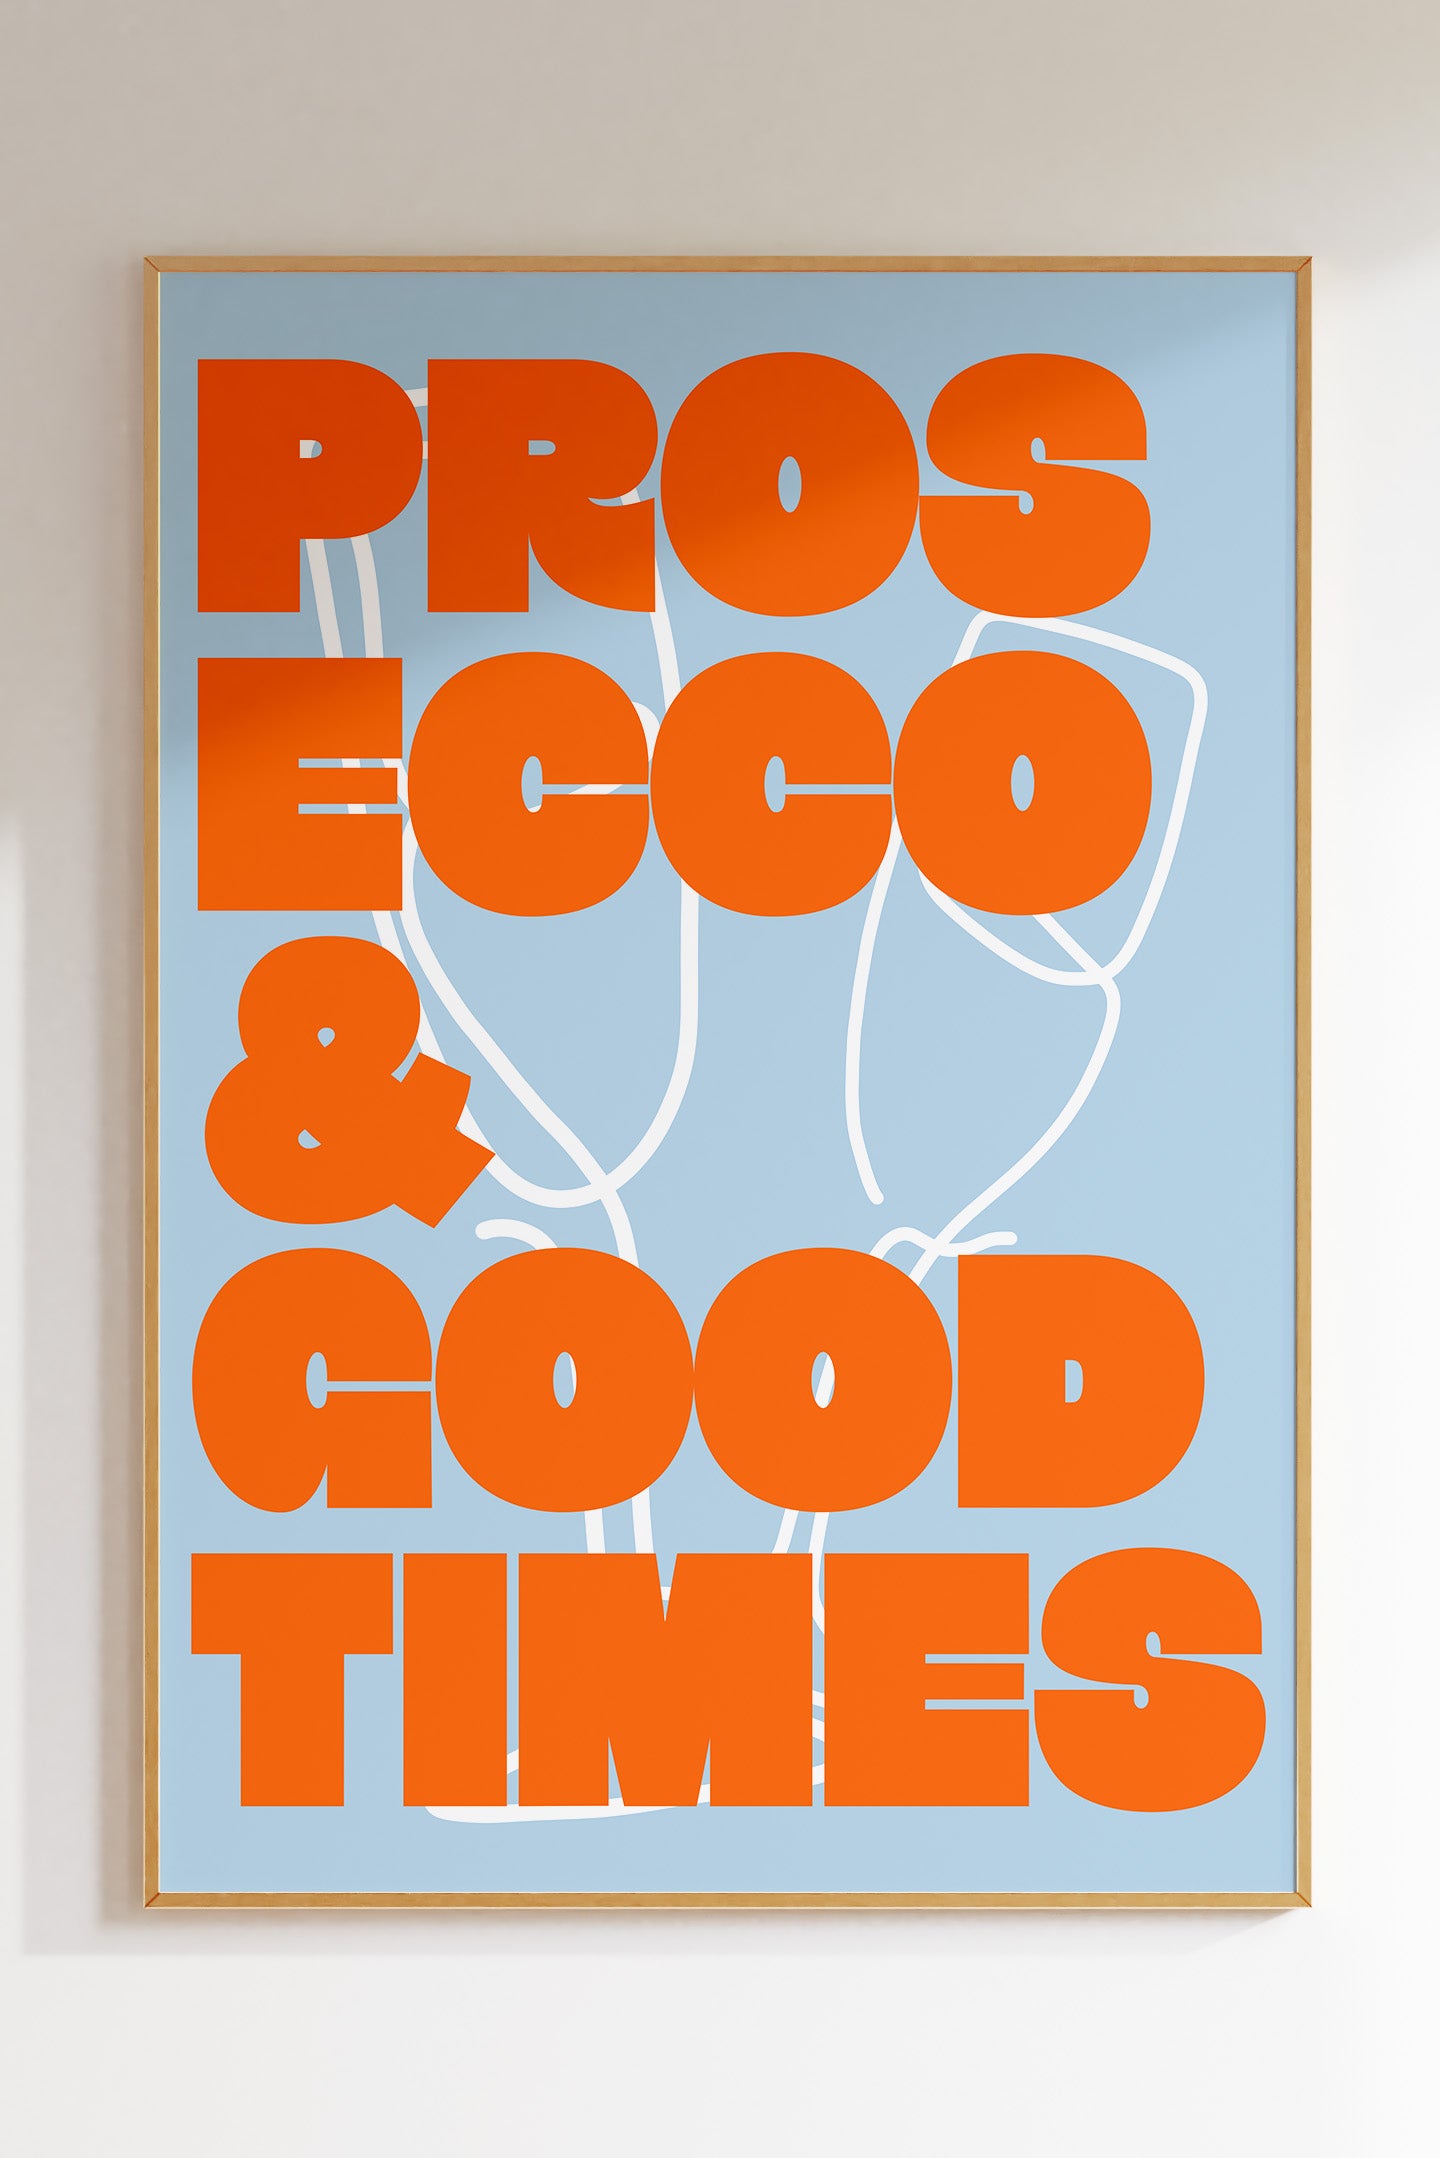 Prosecco & Good Times